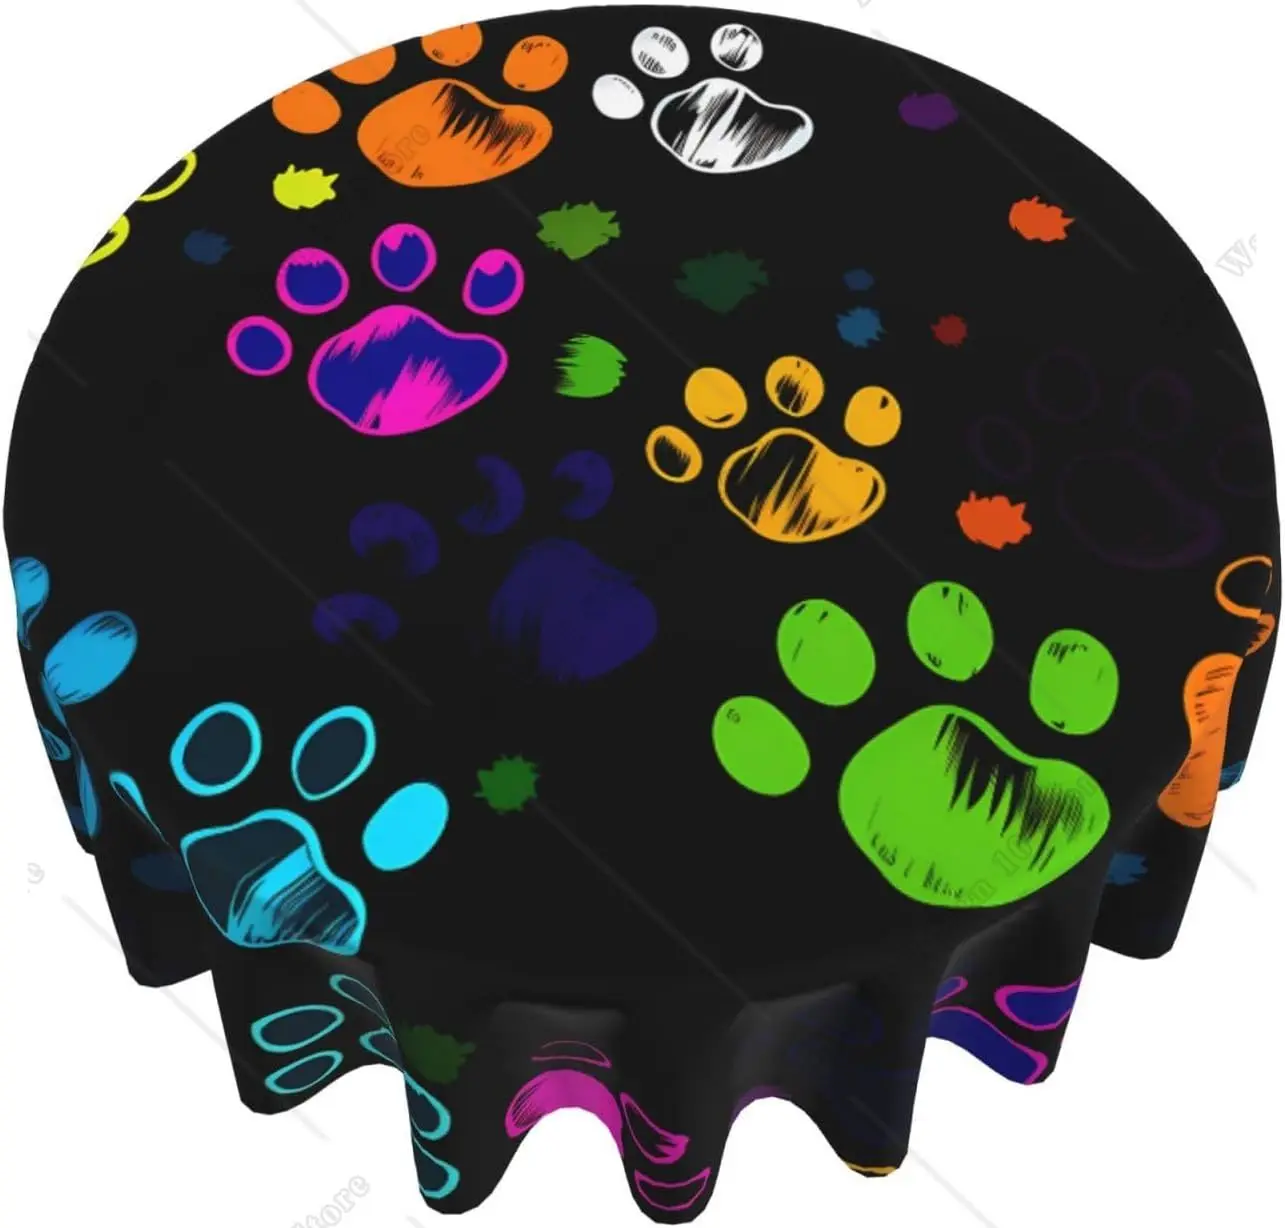 

Цветная круглая скатерть в виде собачьей лапы, смешная моющаяся скатерть из полиэстера, декоративная настольная Обложка для столового банкета 60 дюймов